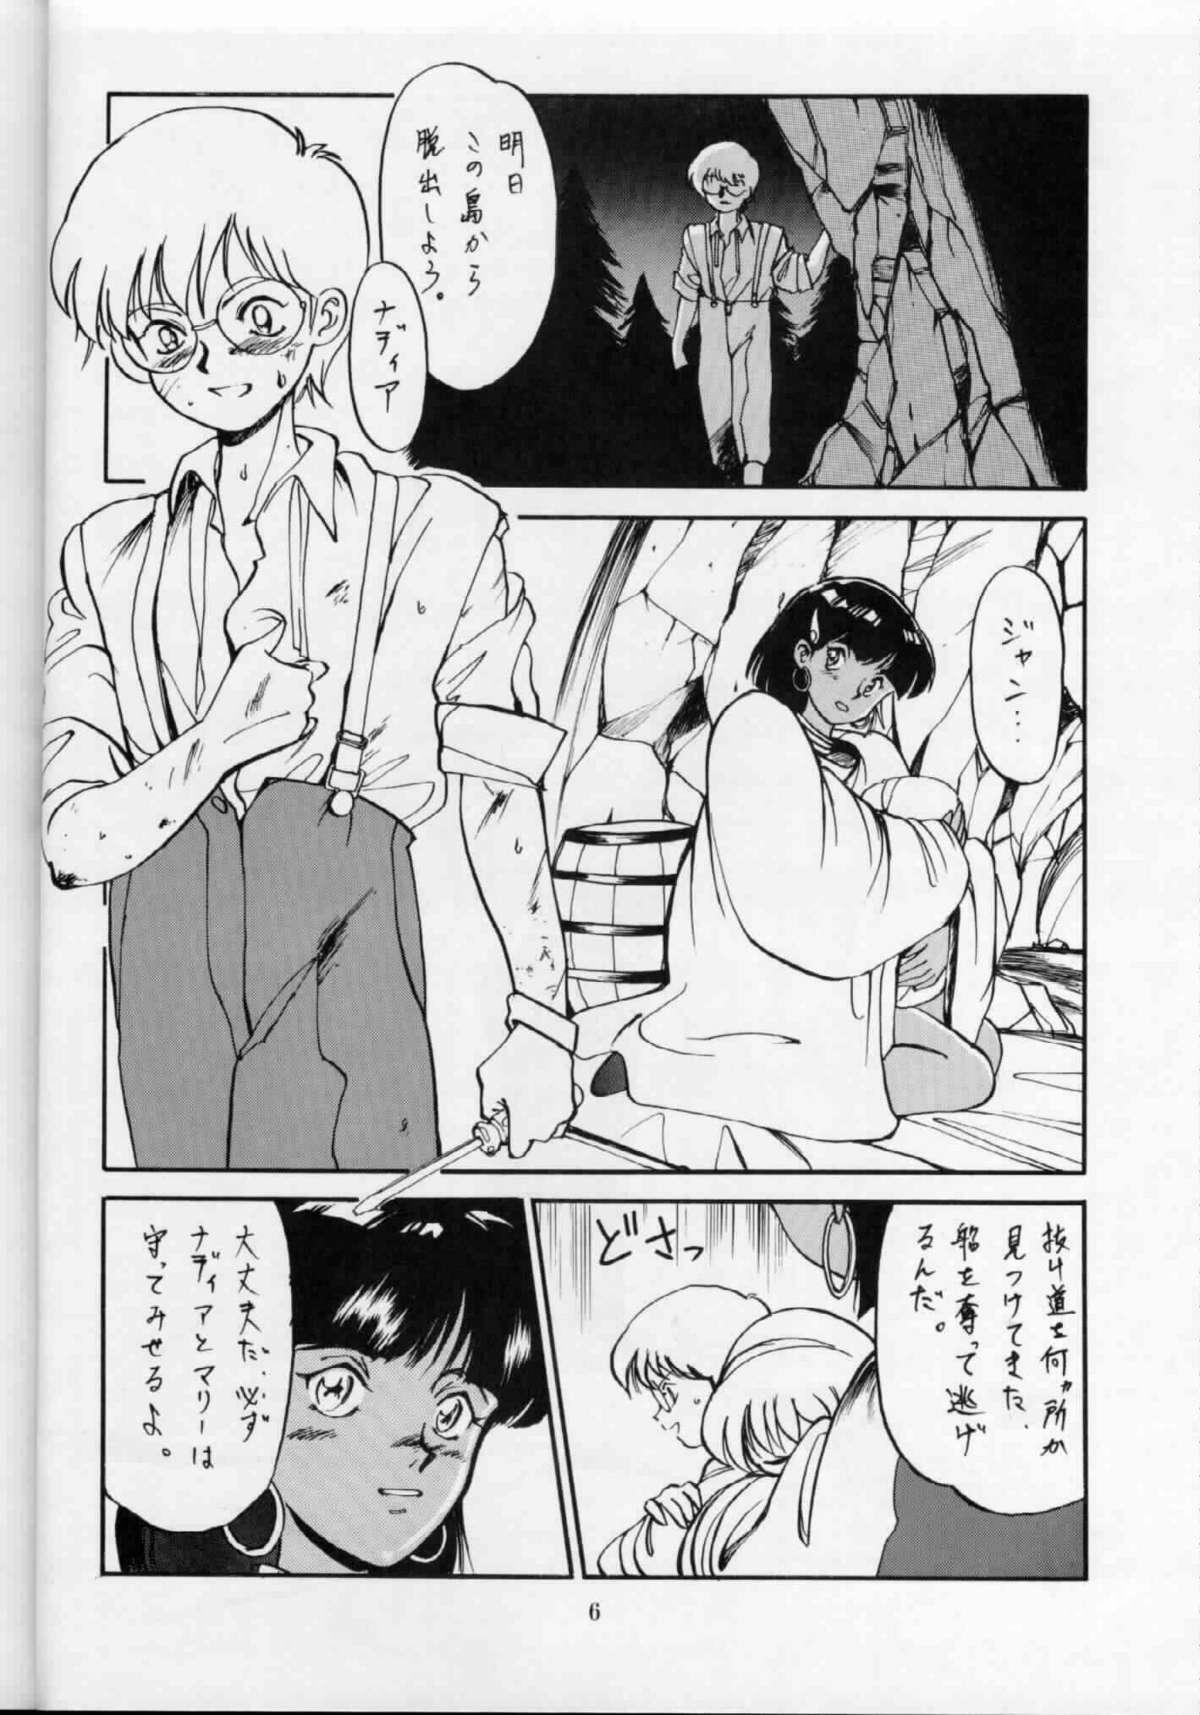 Transex 'T' no Wagamama 'F' no Yuutsu 2 - Fushigi no umi no nadia Stripper - Page 5